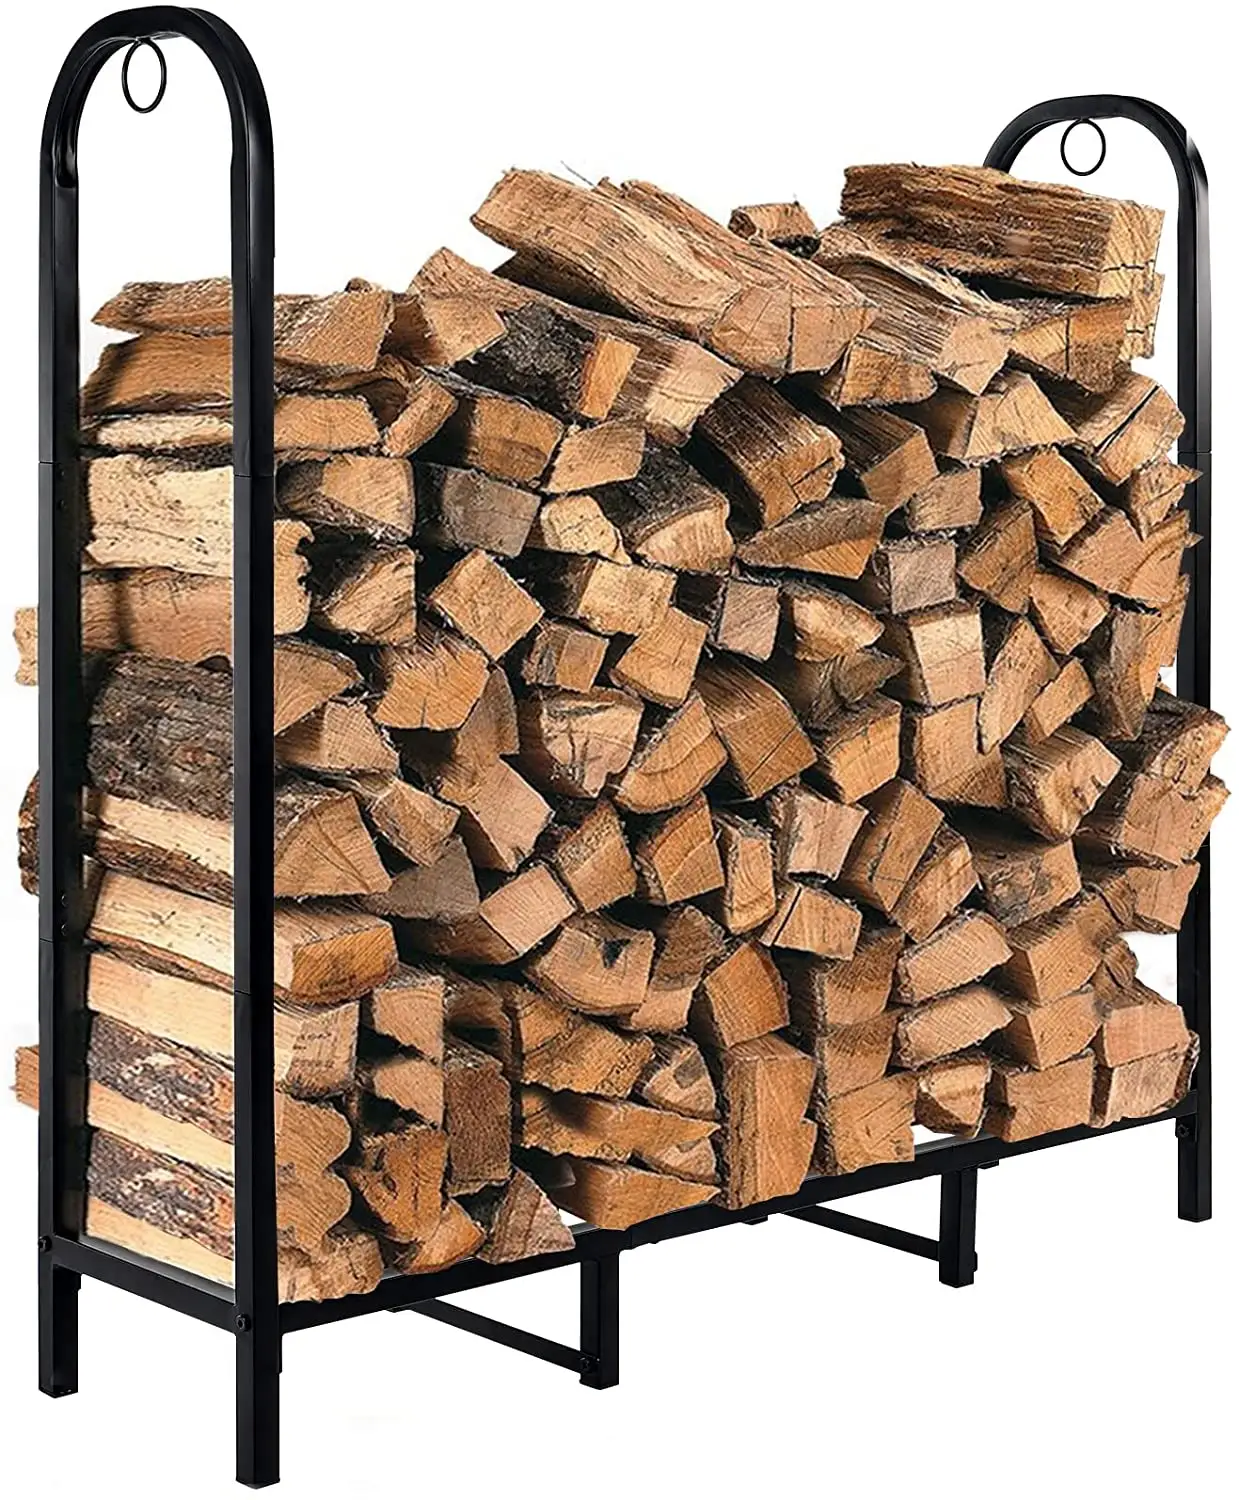 벽난로 또는 불 구덩이 분말을 위한 장작 통나무 선반 실내 옥외 목제 저장 홀더 입히는